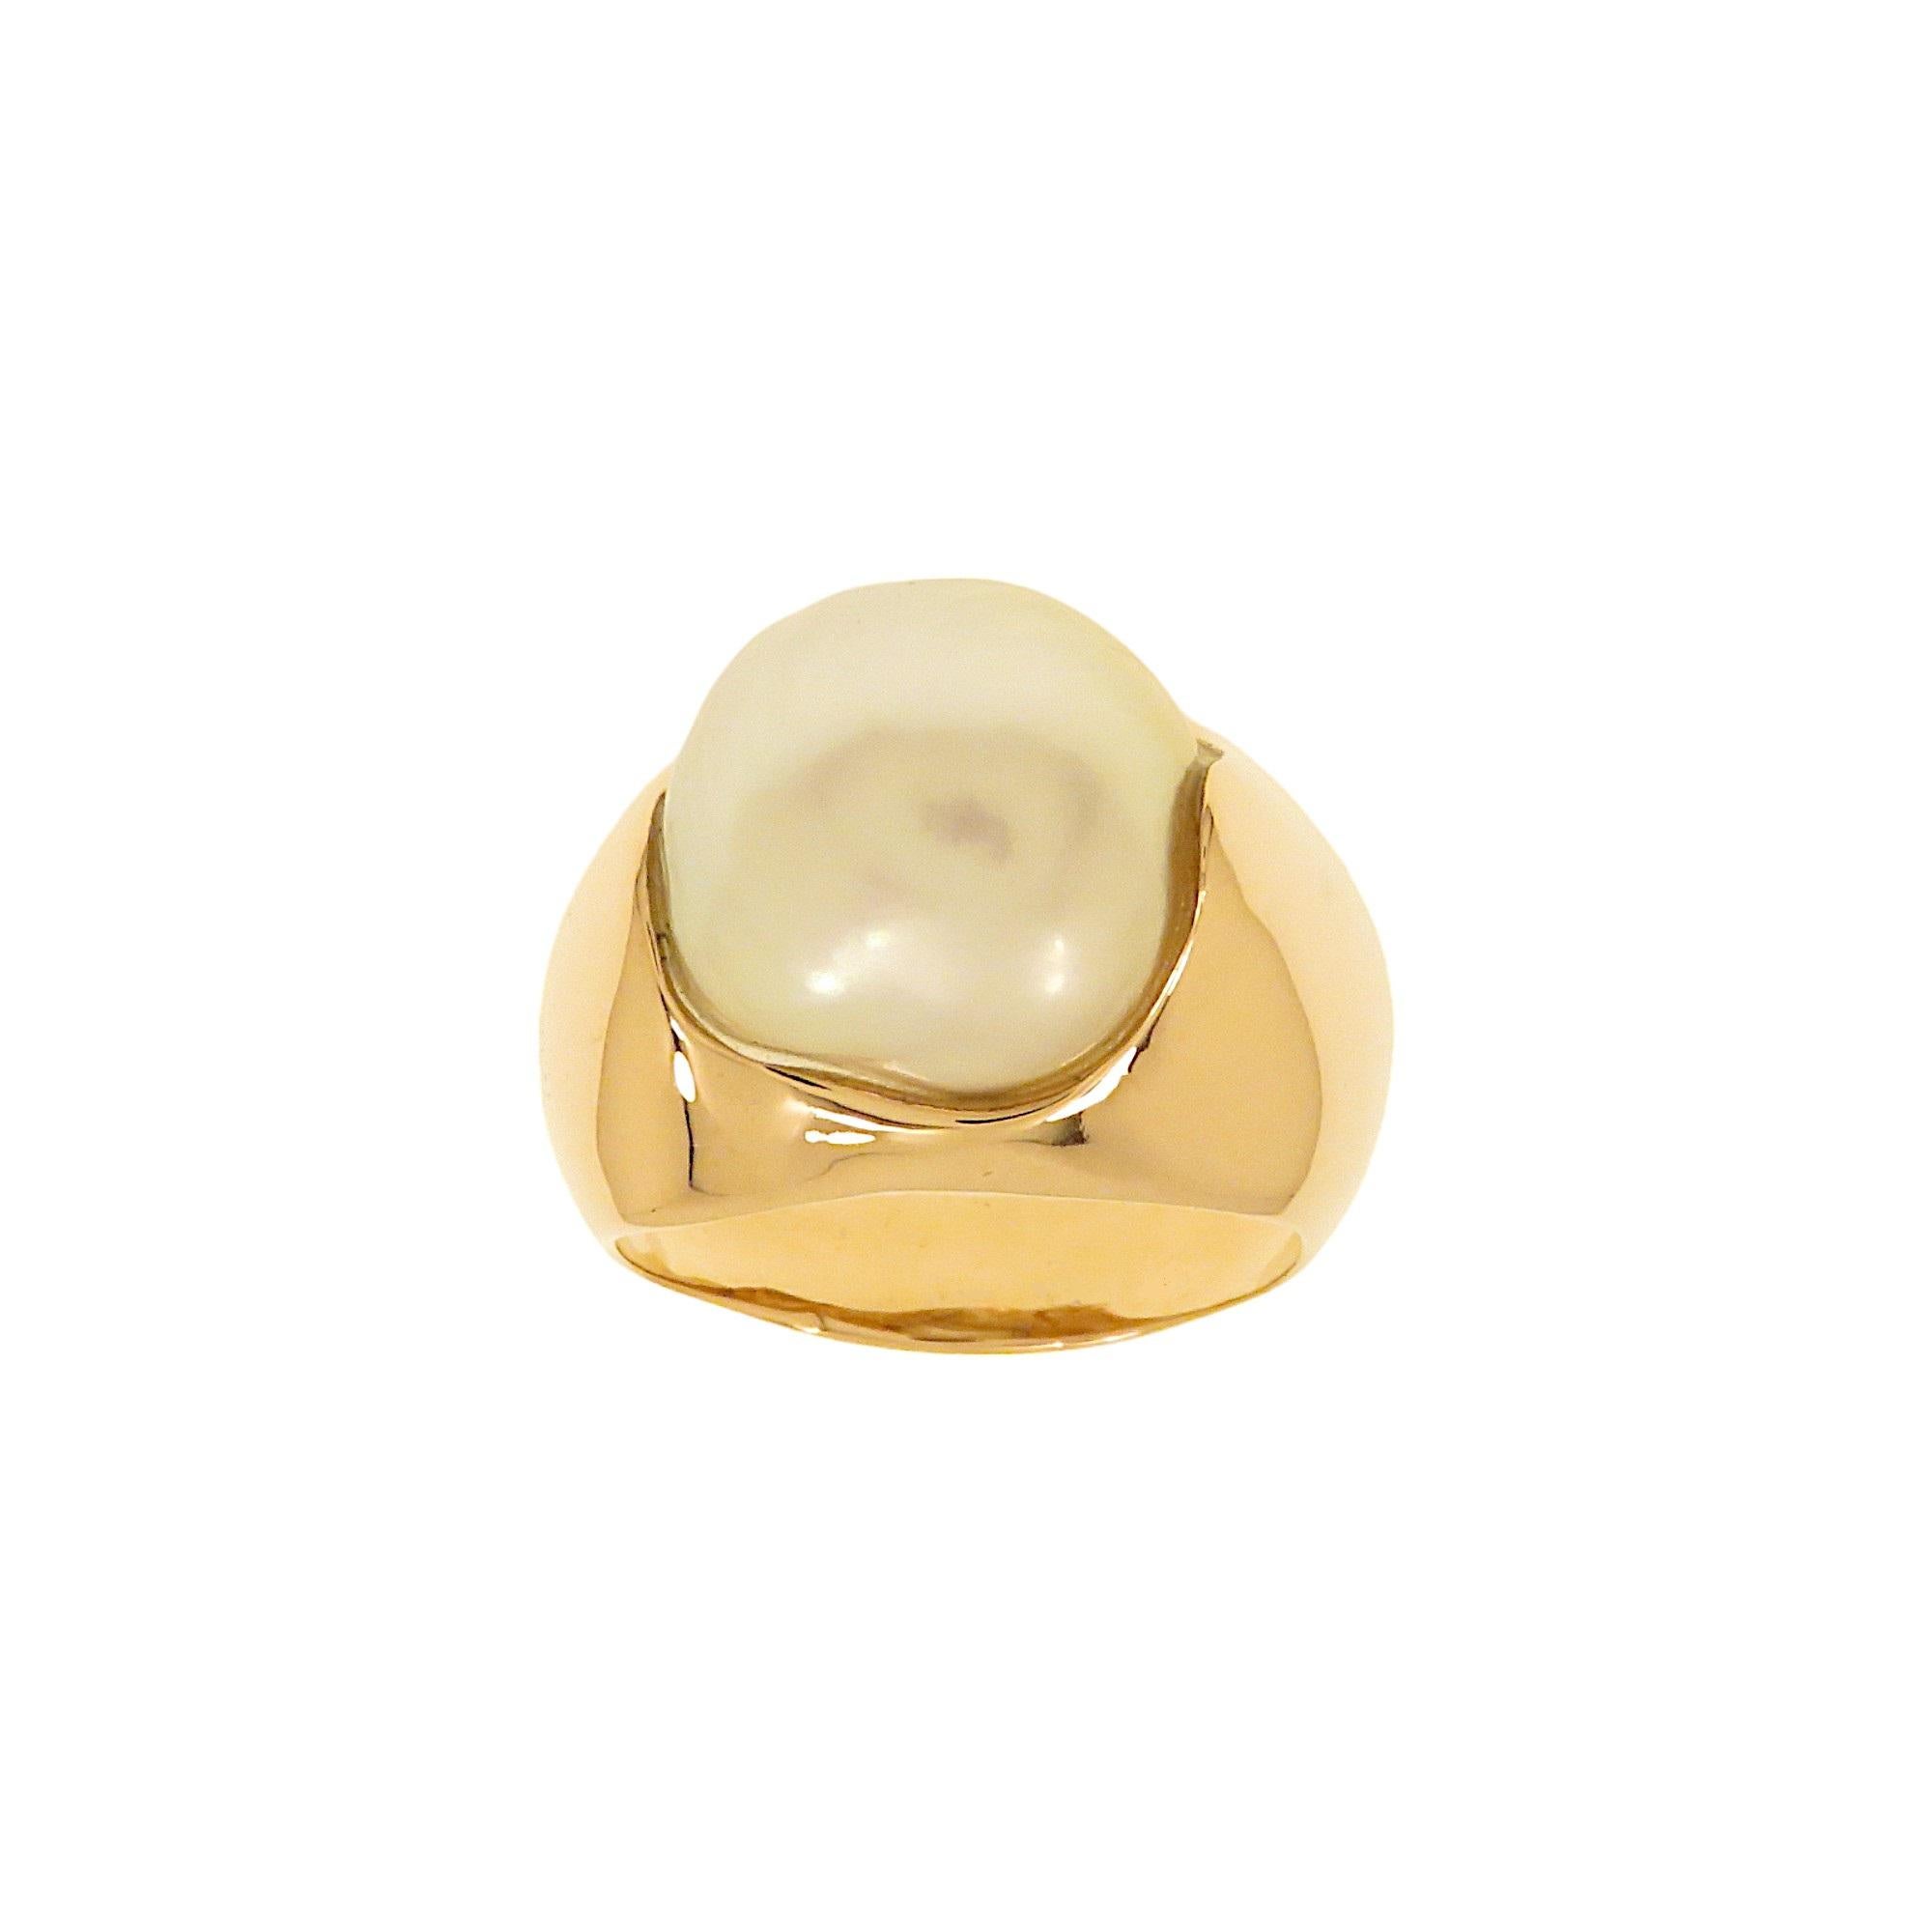 Bague raffinée en or rose 9k conçue pour entourer harmonieusement une superbe perle baroque australienne mesurant 15x13 mm et pesant 15 carats.  La perle cultivée en Australie a une couleur blanc argenté d'une extraordinaire beauté et est unique